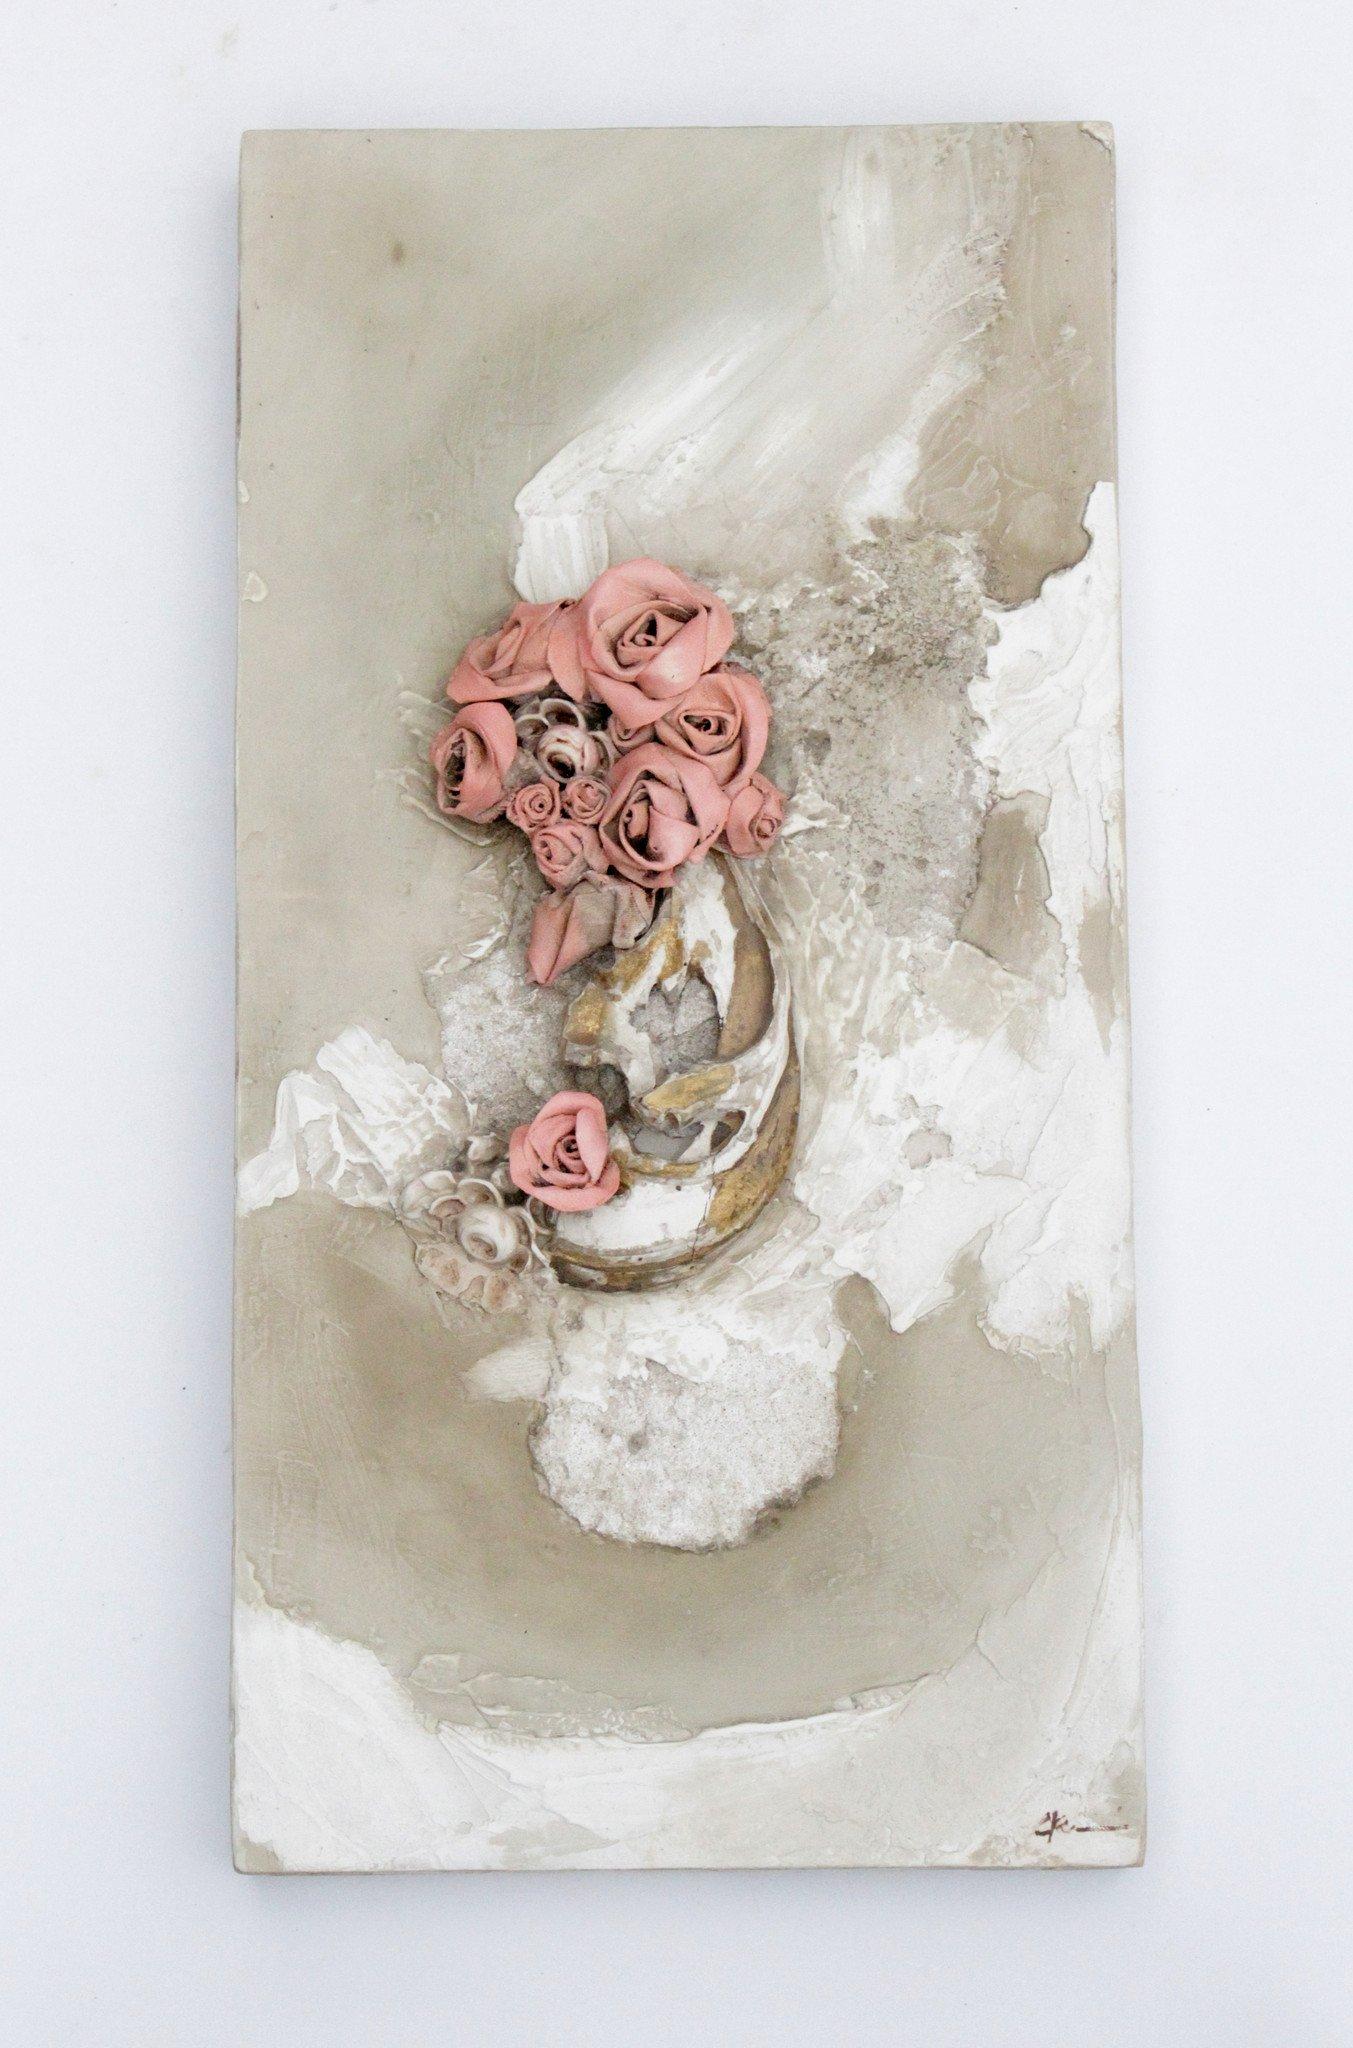 Paar italienische Fragmente aus dem 18. Jahrhundert, verziert mit Blumen aus Leinen, Korallen aus fossilem Achat und venezianischen Gipsrosen.
 
Eine Arbeit besteht nur aus Gips, während die andere eine Kombination aus traditionellem italienischem